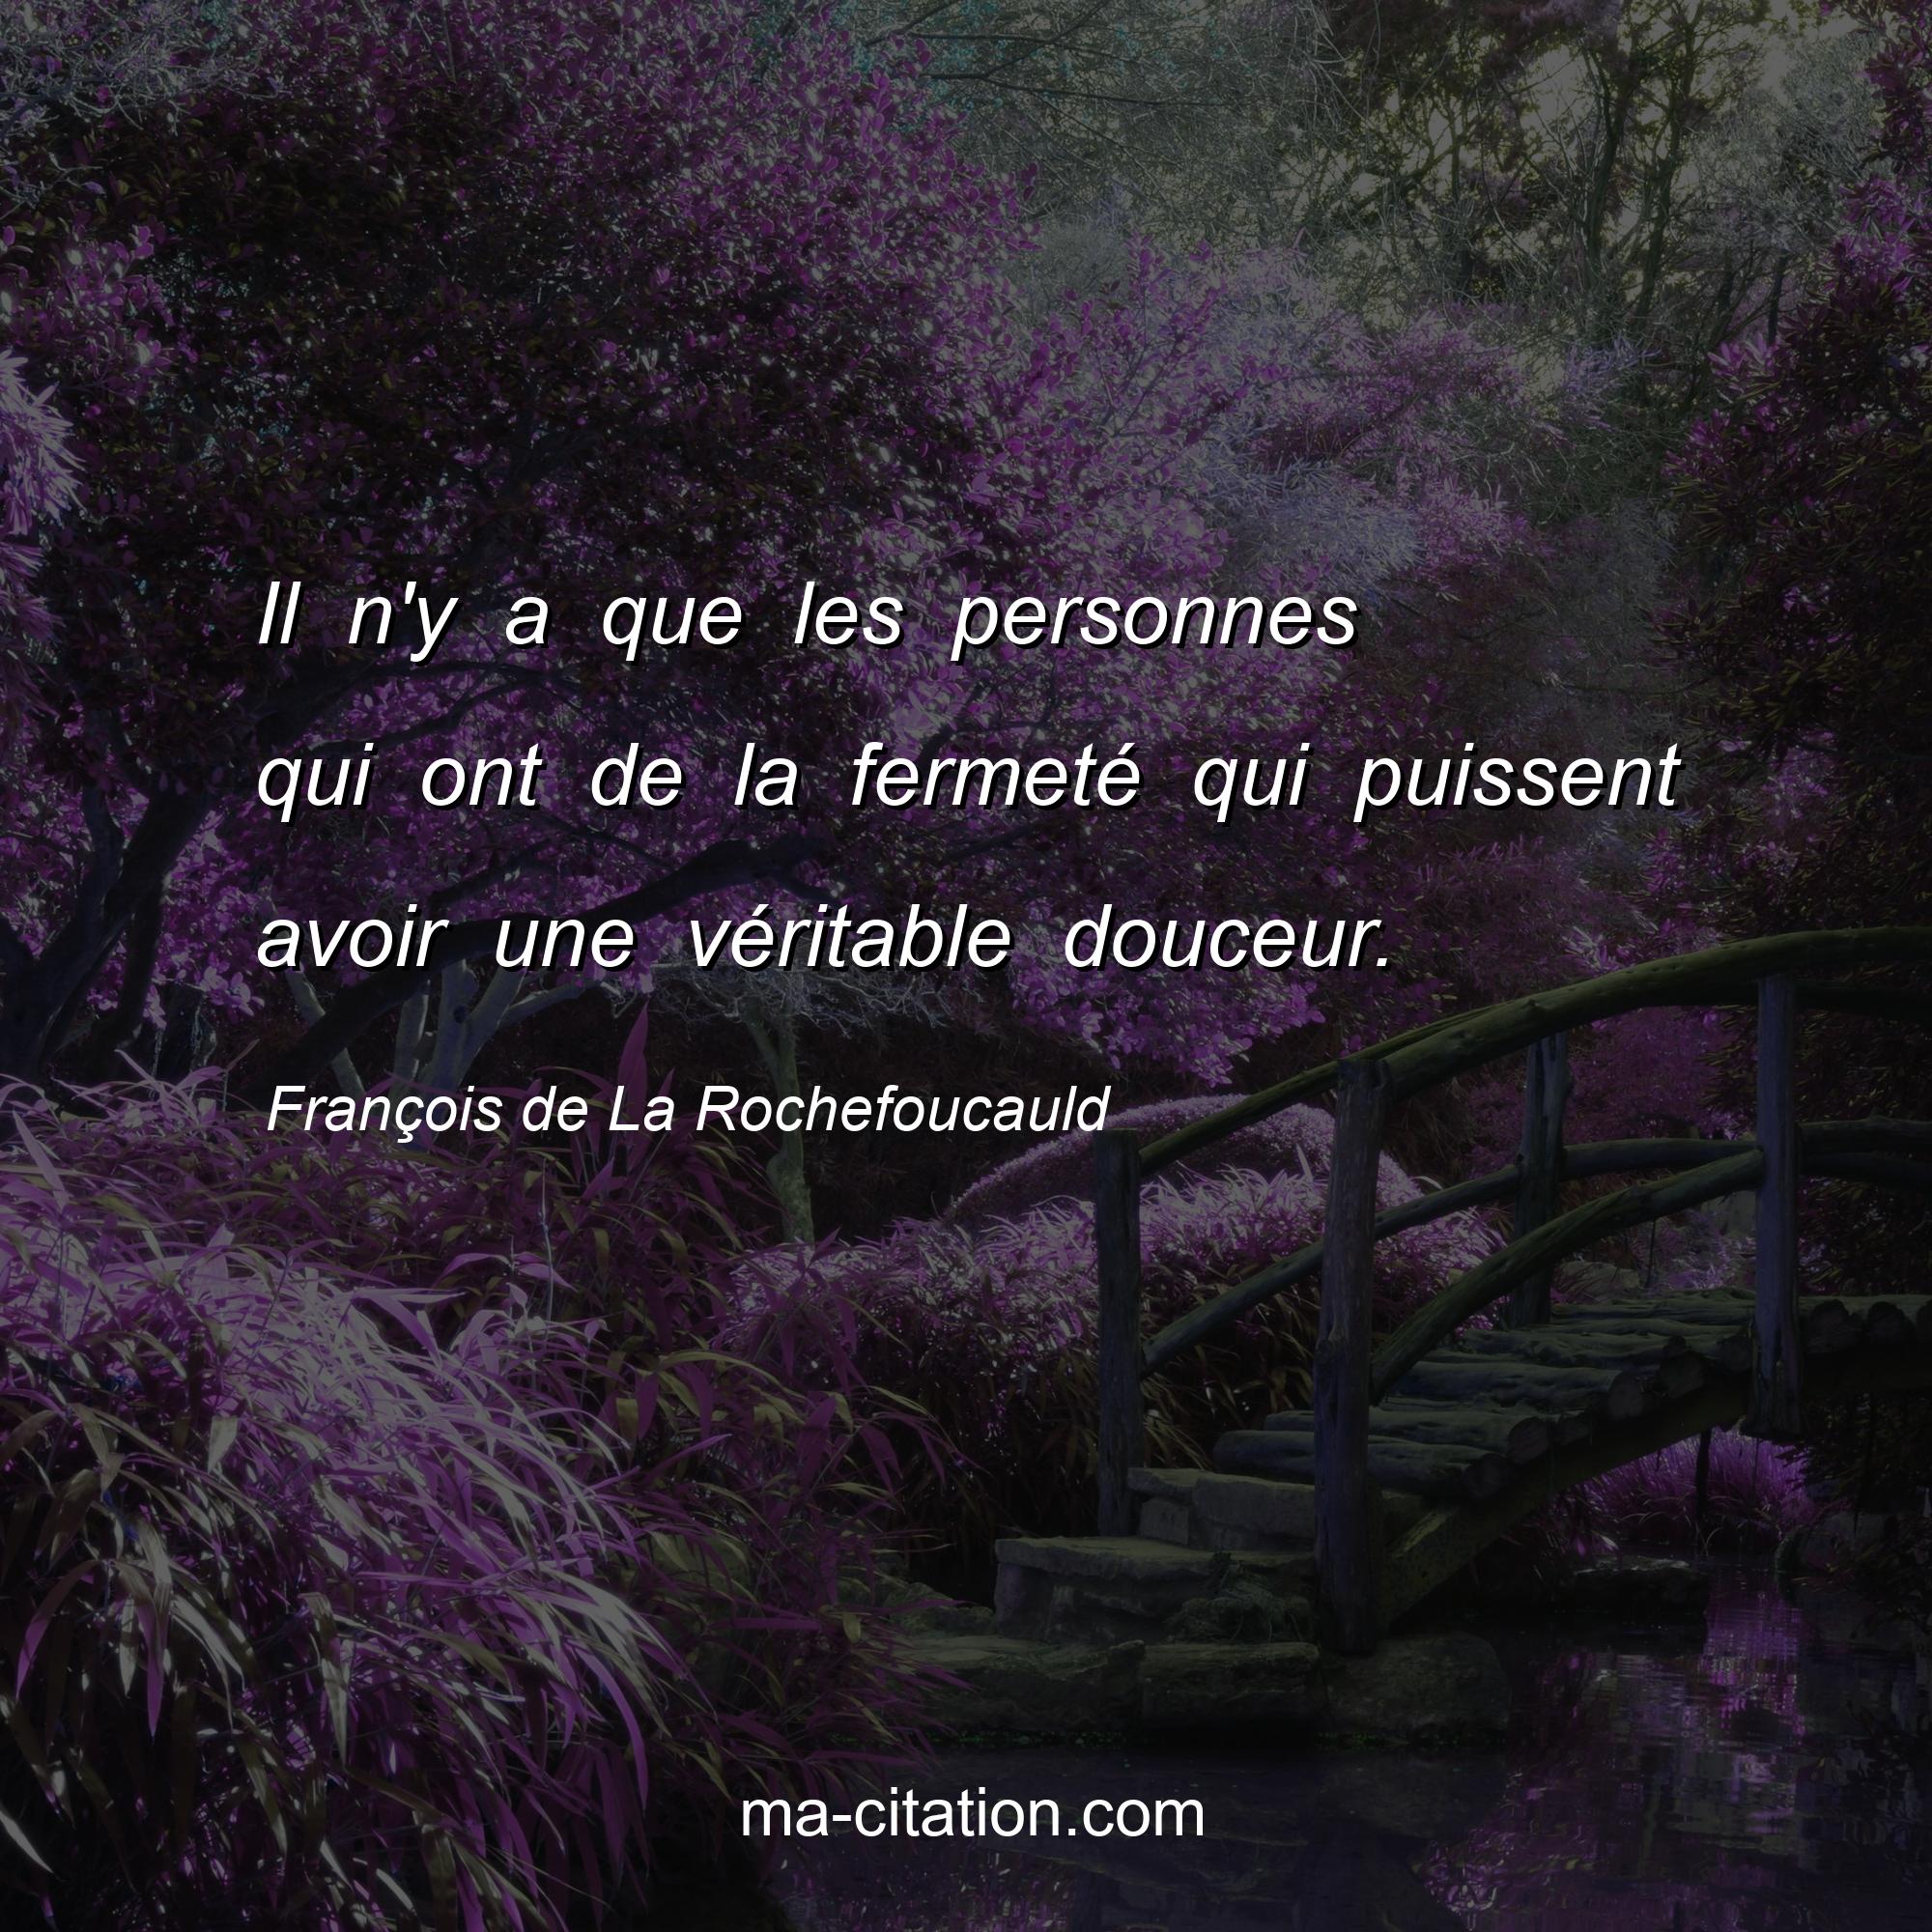 François de La Rochefoucauld : Il n'y a que les personnes qui ont de la fermeté qui puissent avoir une véritable douceur.